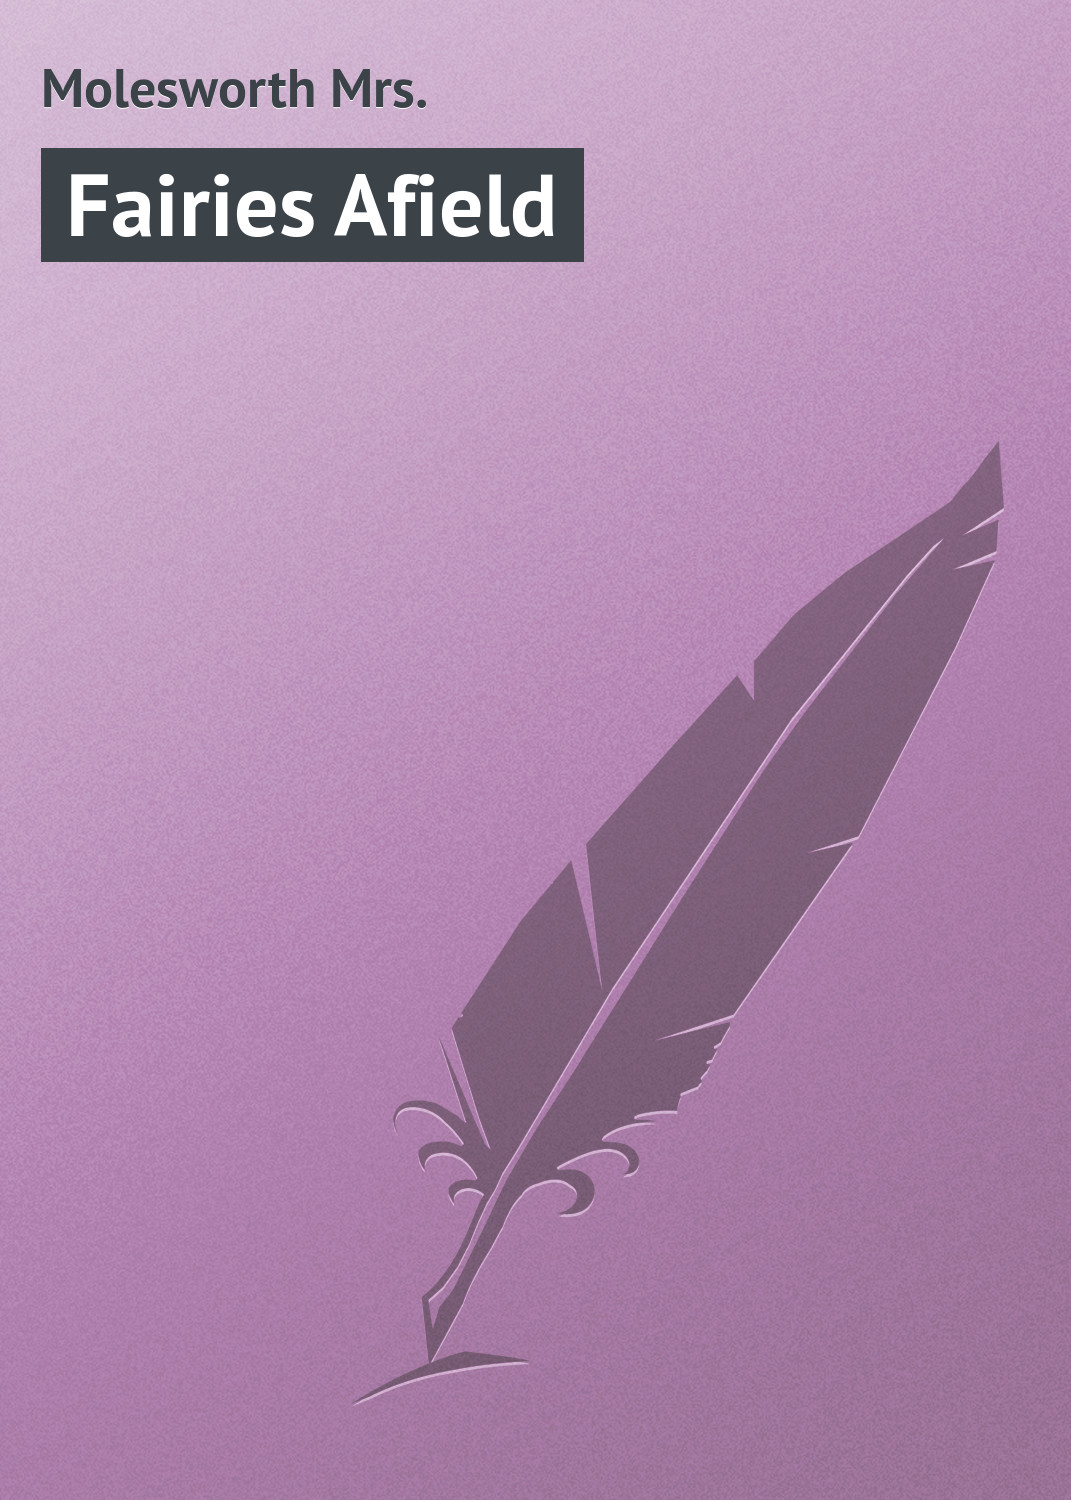 Книга Fairies Afield из серии , созданная Mrs. Molesworth, может относится к жанру Зарубежная классика. Стоимость электронной книги Fairies Afield с идентификатором 23165739 составляет 5.99 руб.